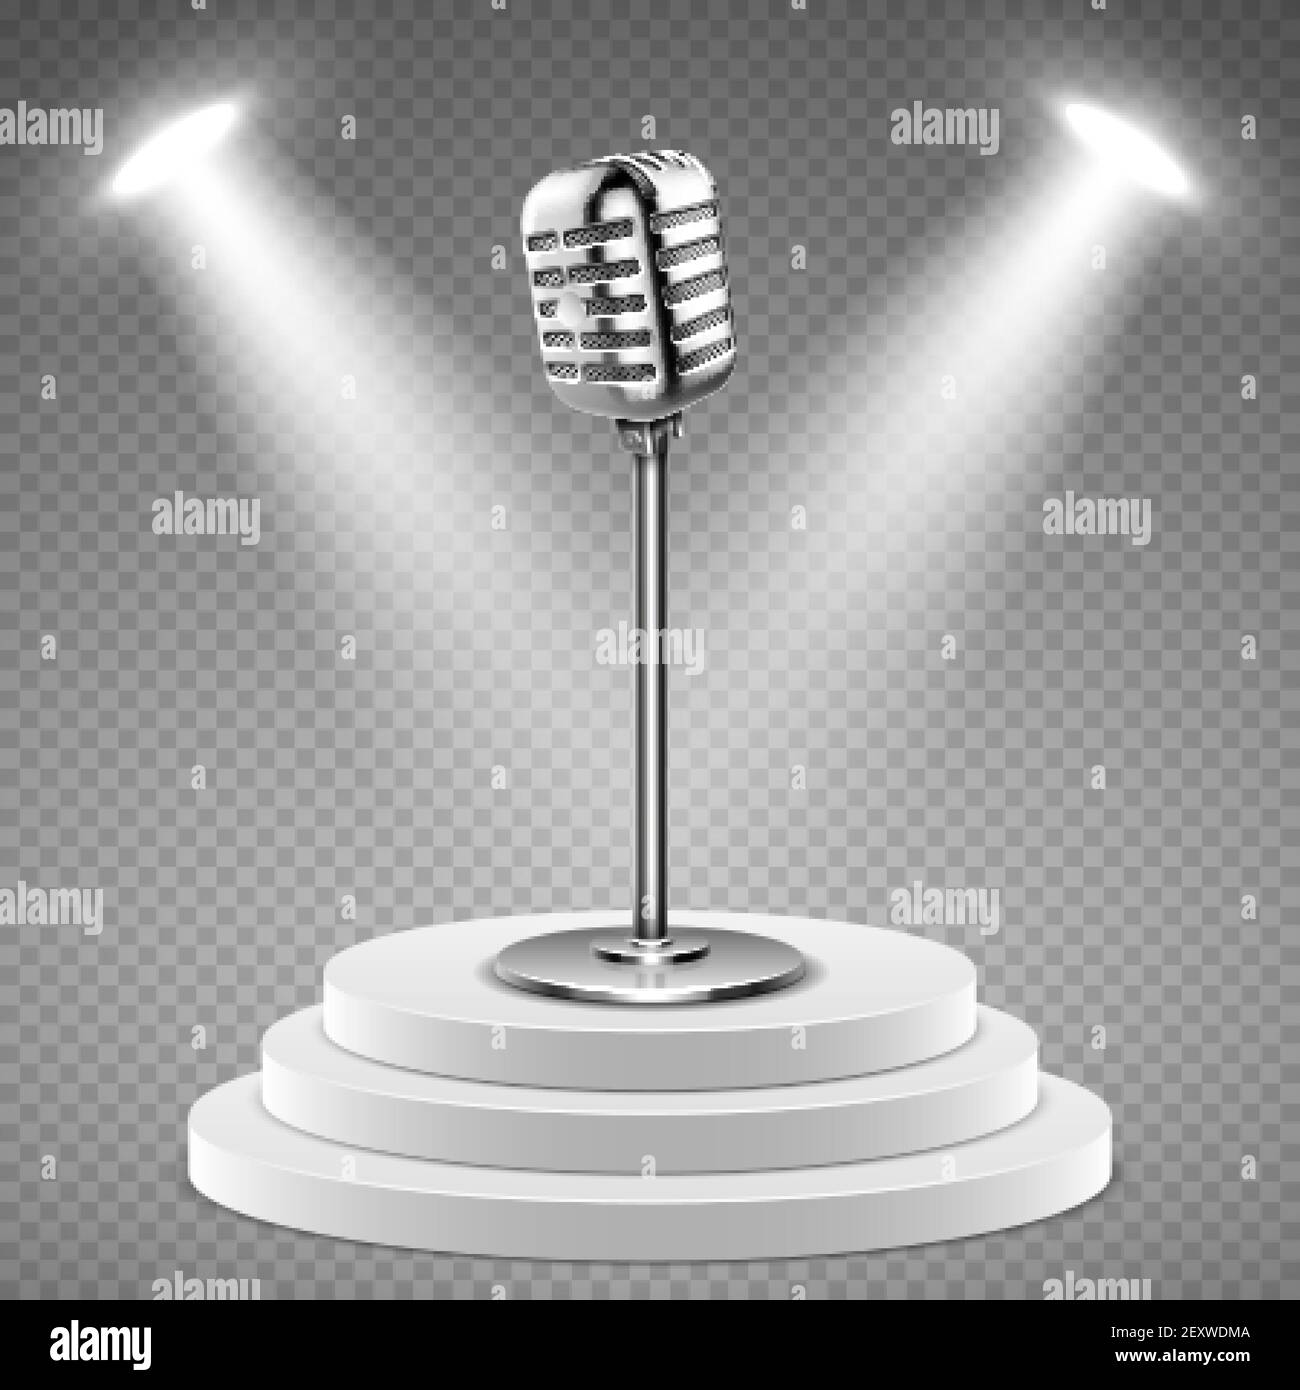 Realistisches Mikrofon. Weißes Podium für Bühne und 3D Mikrofon. Tonstudio-Ausrüstung, Konzert oder Radio-Vektor-Element. Radiostudio mit Bühne und Mikrofon Illustration Stock Vektor